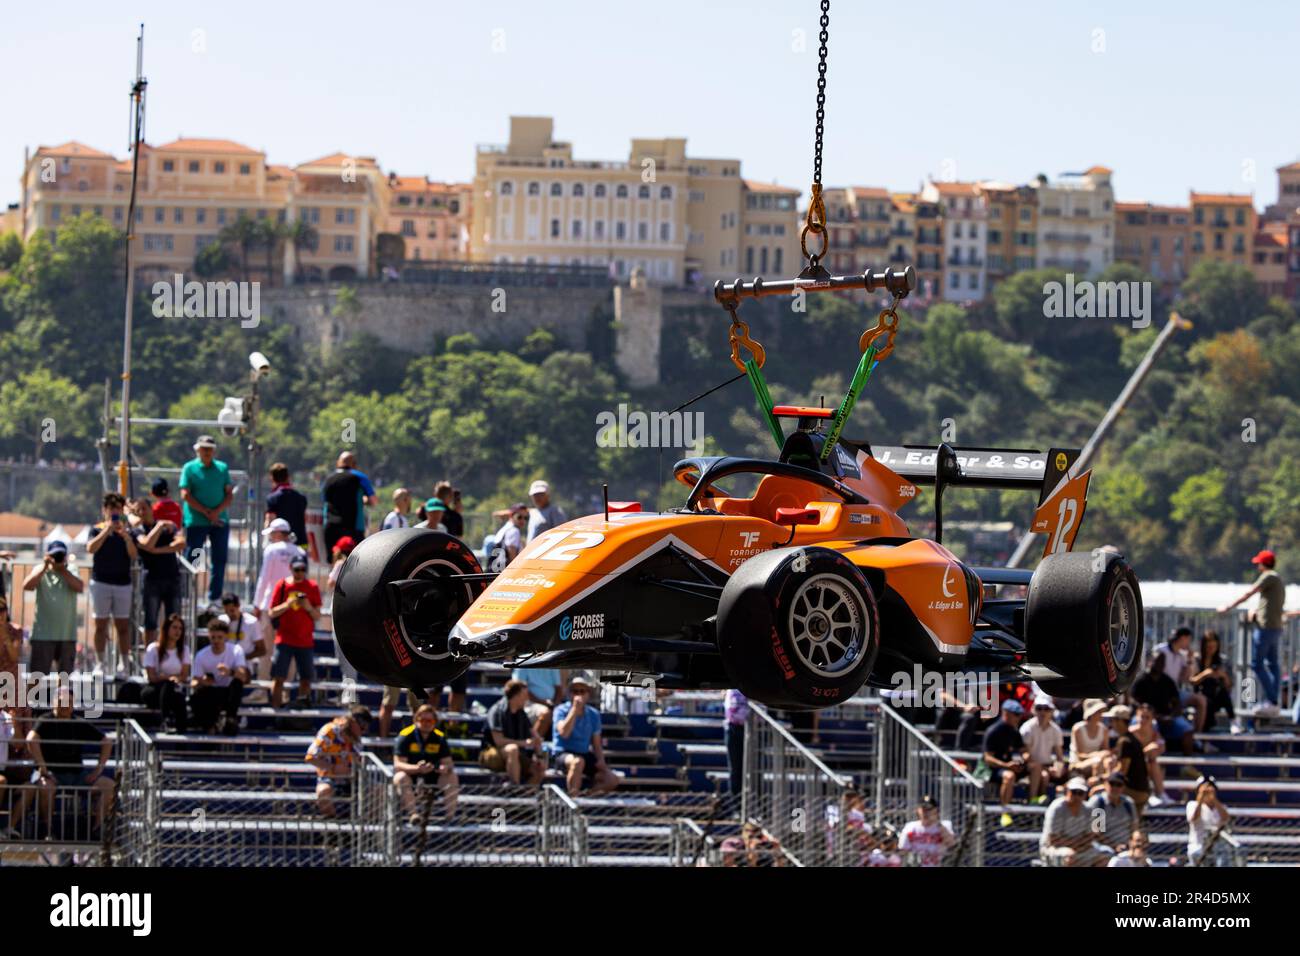 12 EDGAR Jonny (gbr), MP Motorsport, Dallara F3, crash durante il 3rd° round del Campionato FIA di Formula 3 2023 dal 26 al 28 maggio 2023 sul circuito di Monaco, a Monaco - Foto Julien Delfosse/DPPI Foto Stock